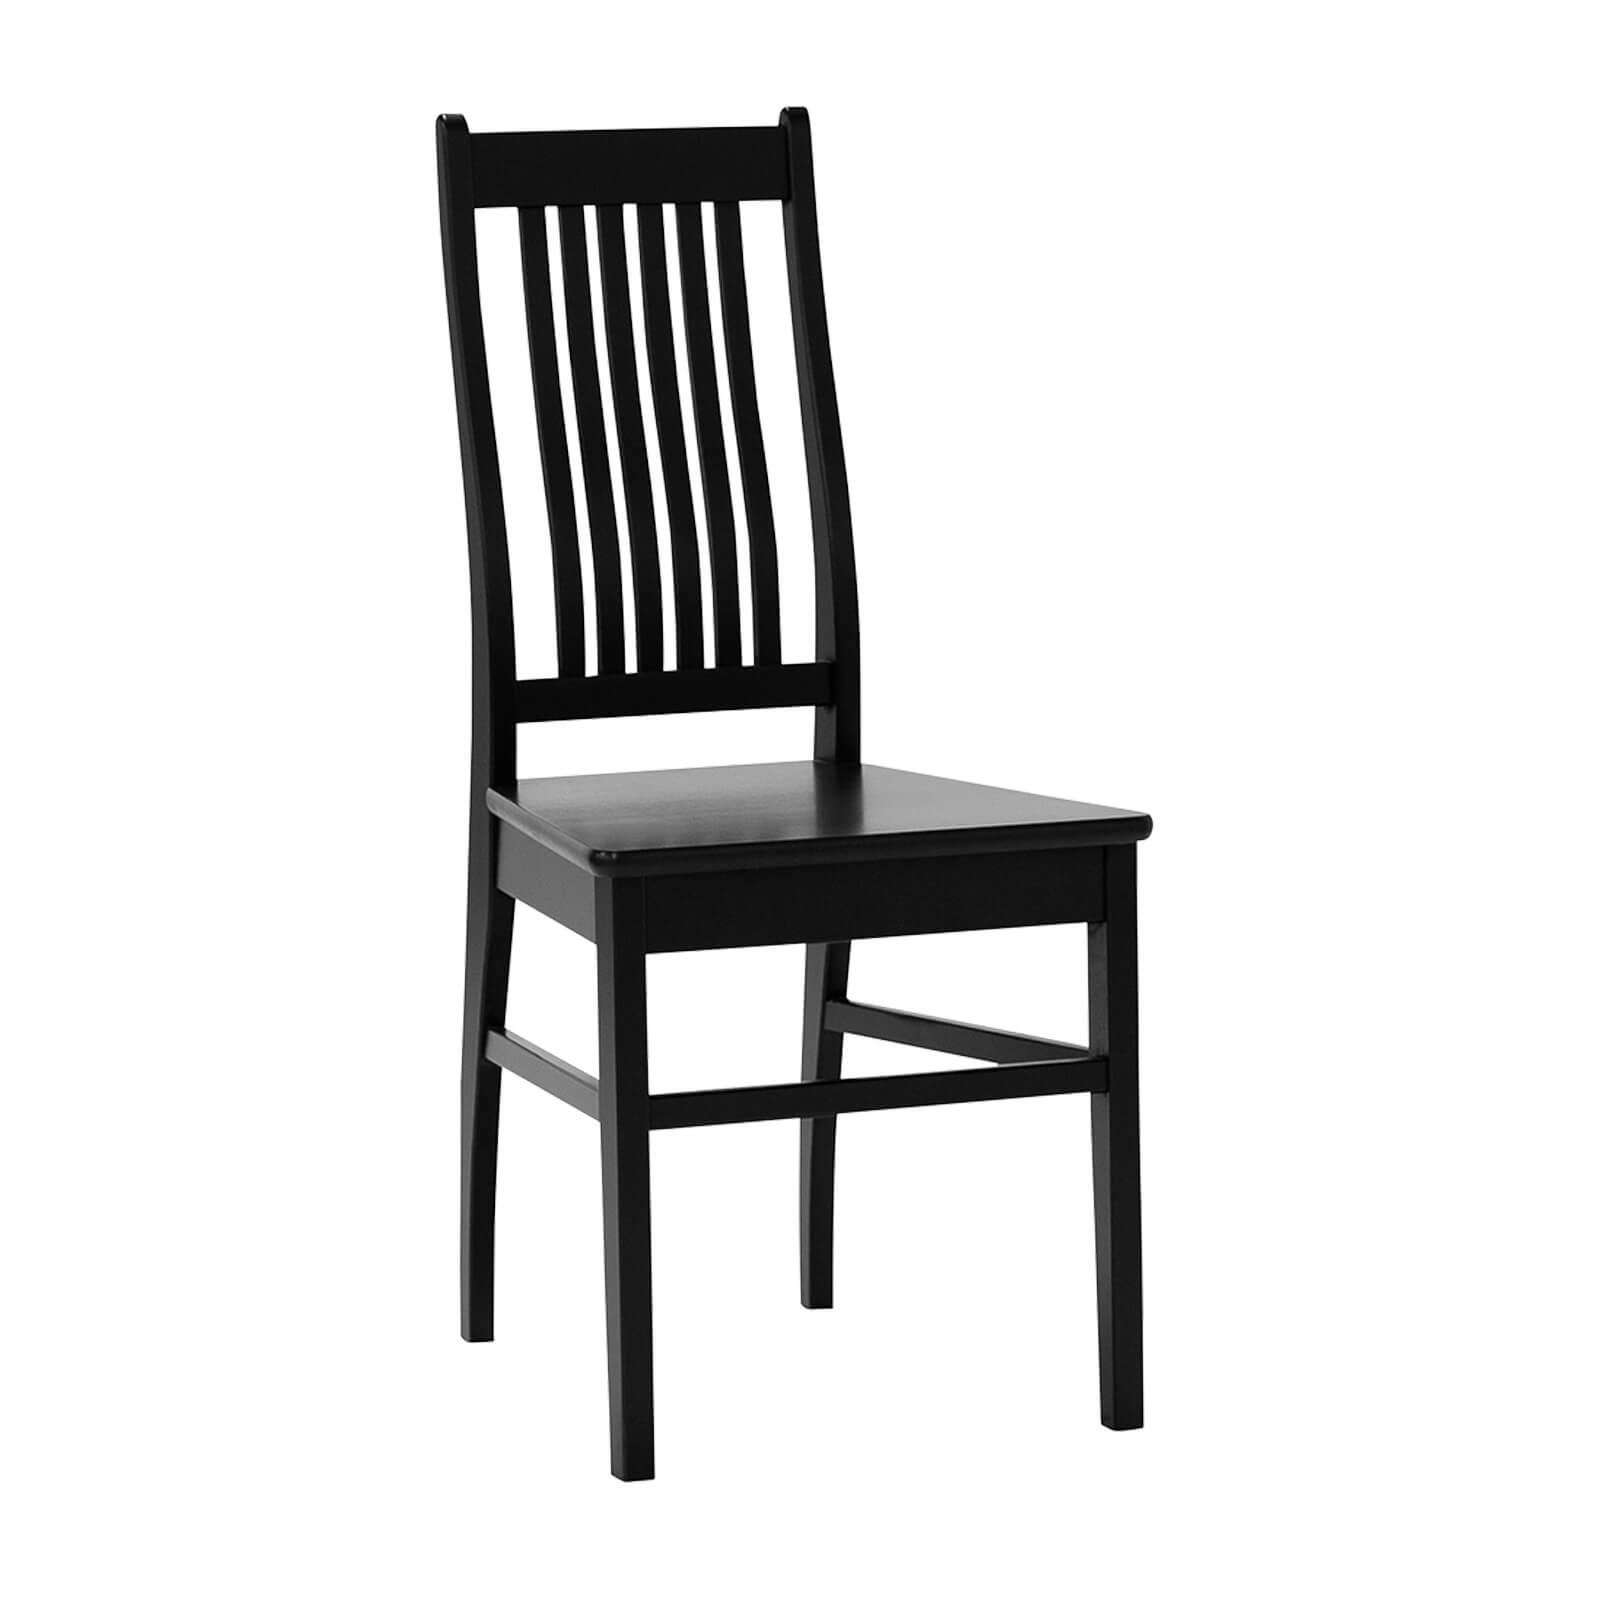 Sanna koivuinen tuoli musta